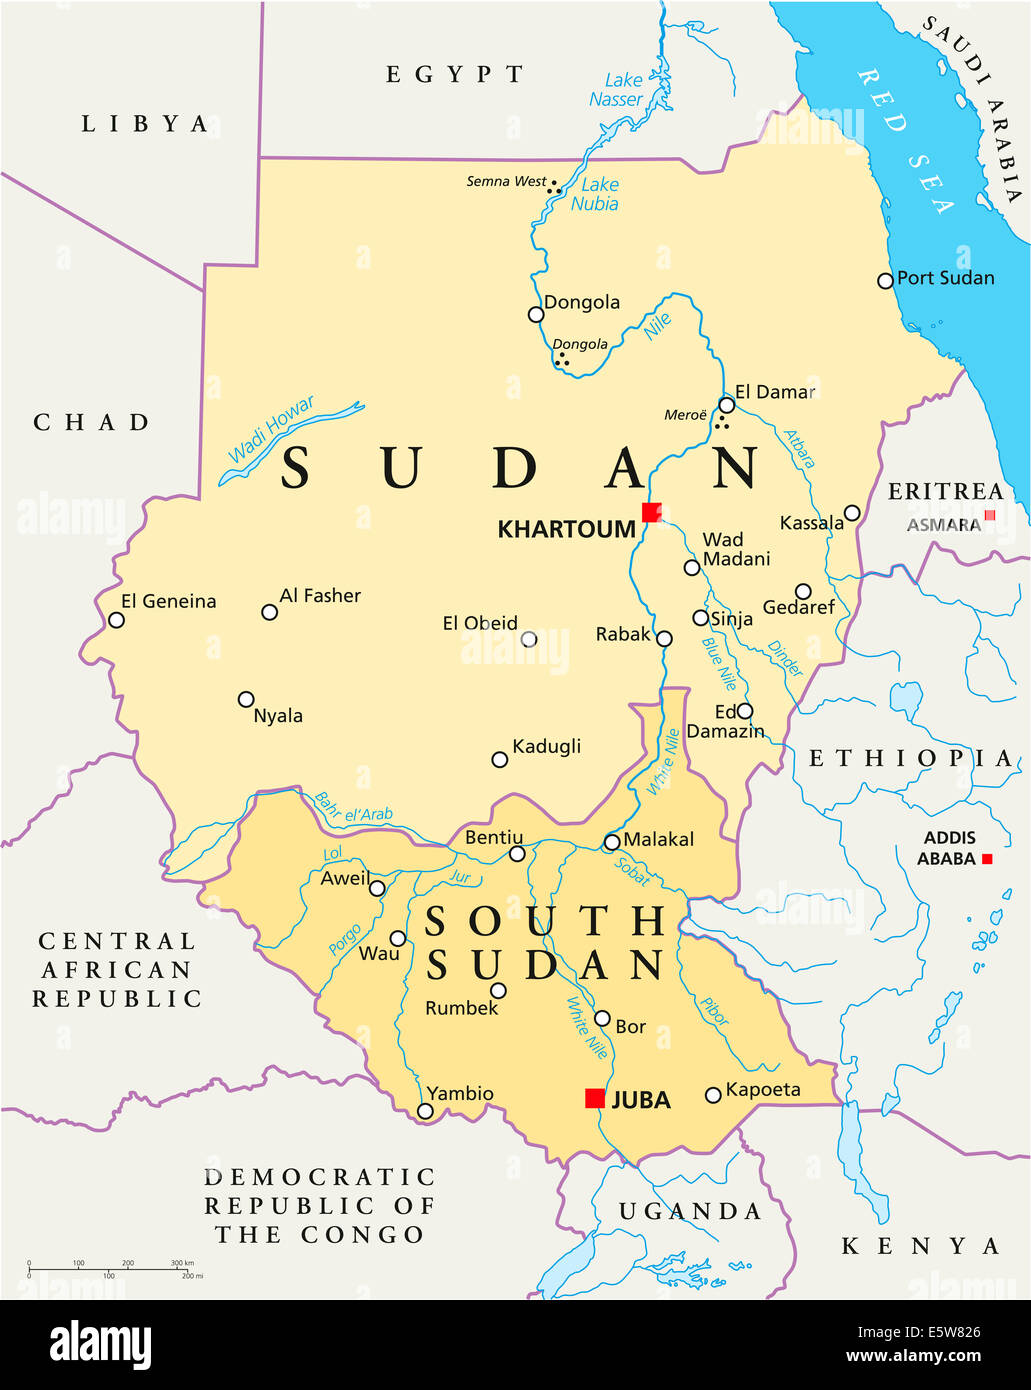 Le Soudan et le Soudan du Sud Carte politique avec les capitales Khartoum et Juba, les frontières nationales, d'importantes villes, rivières et lacs. Banque D'Images